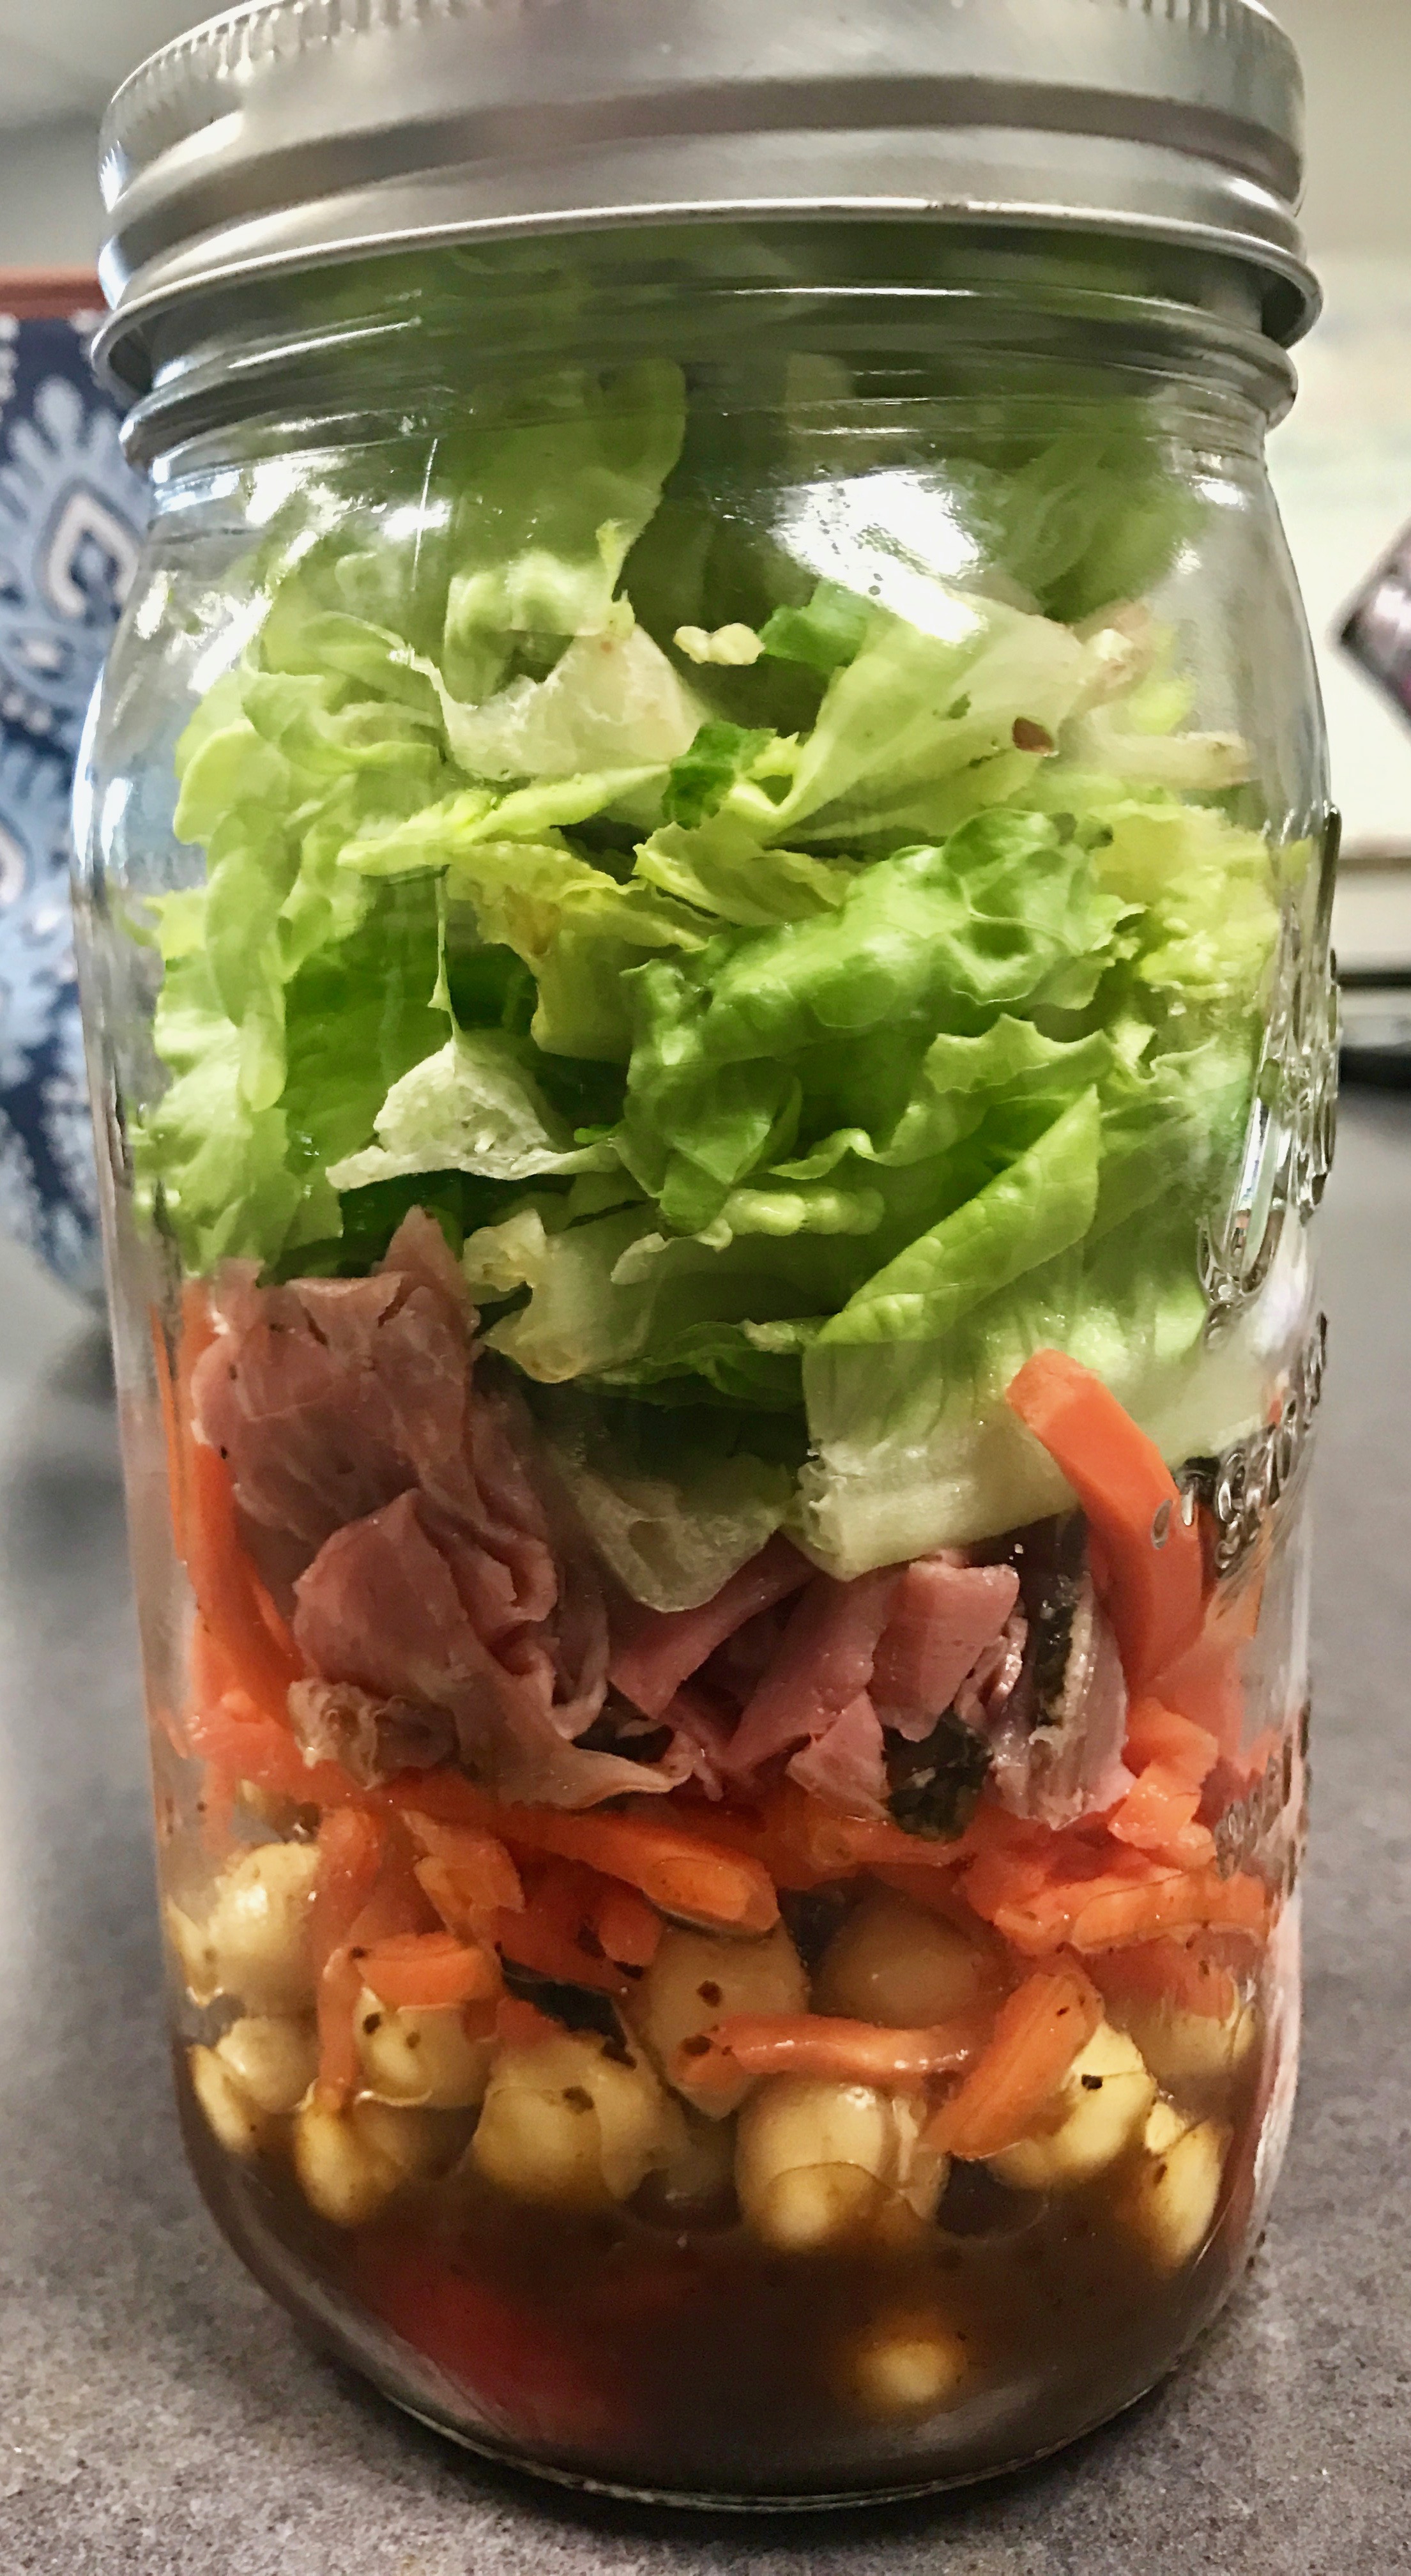 Roast Beef Salad in a Jar